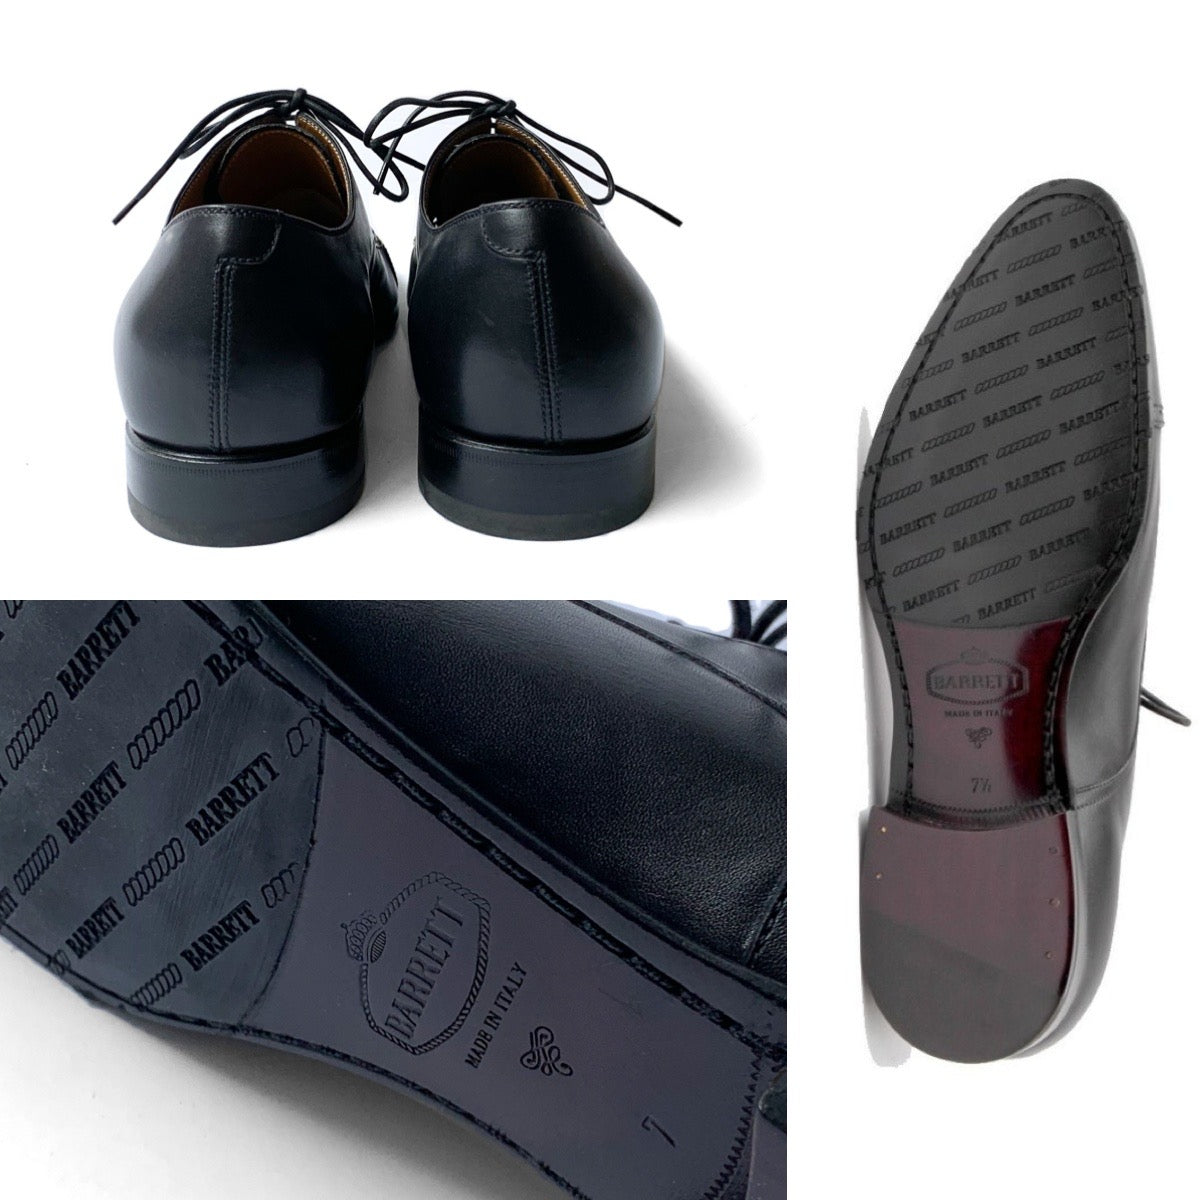 BARRETT／バレット ドレスシューズ 革靴 カーフレザー ストレートチップ ブローグ ブラック bar0007